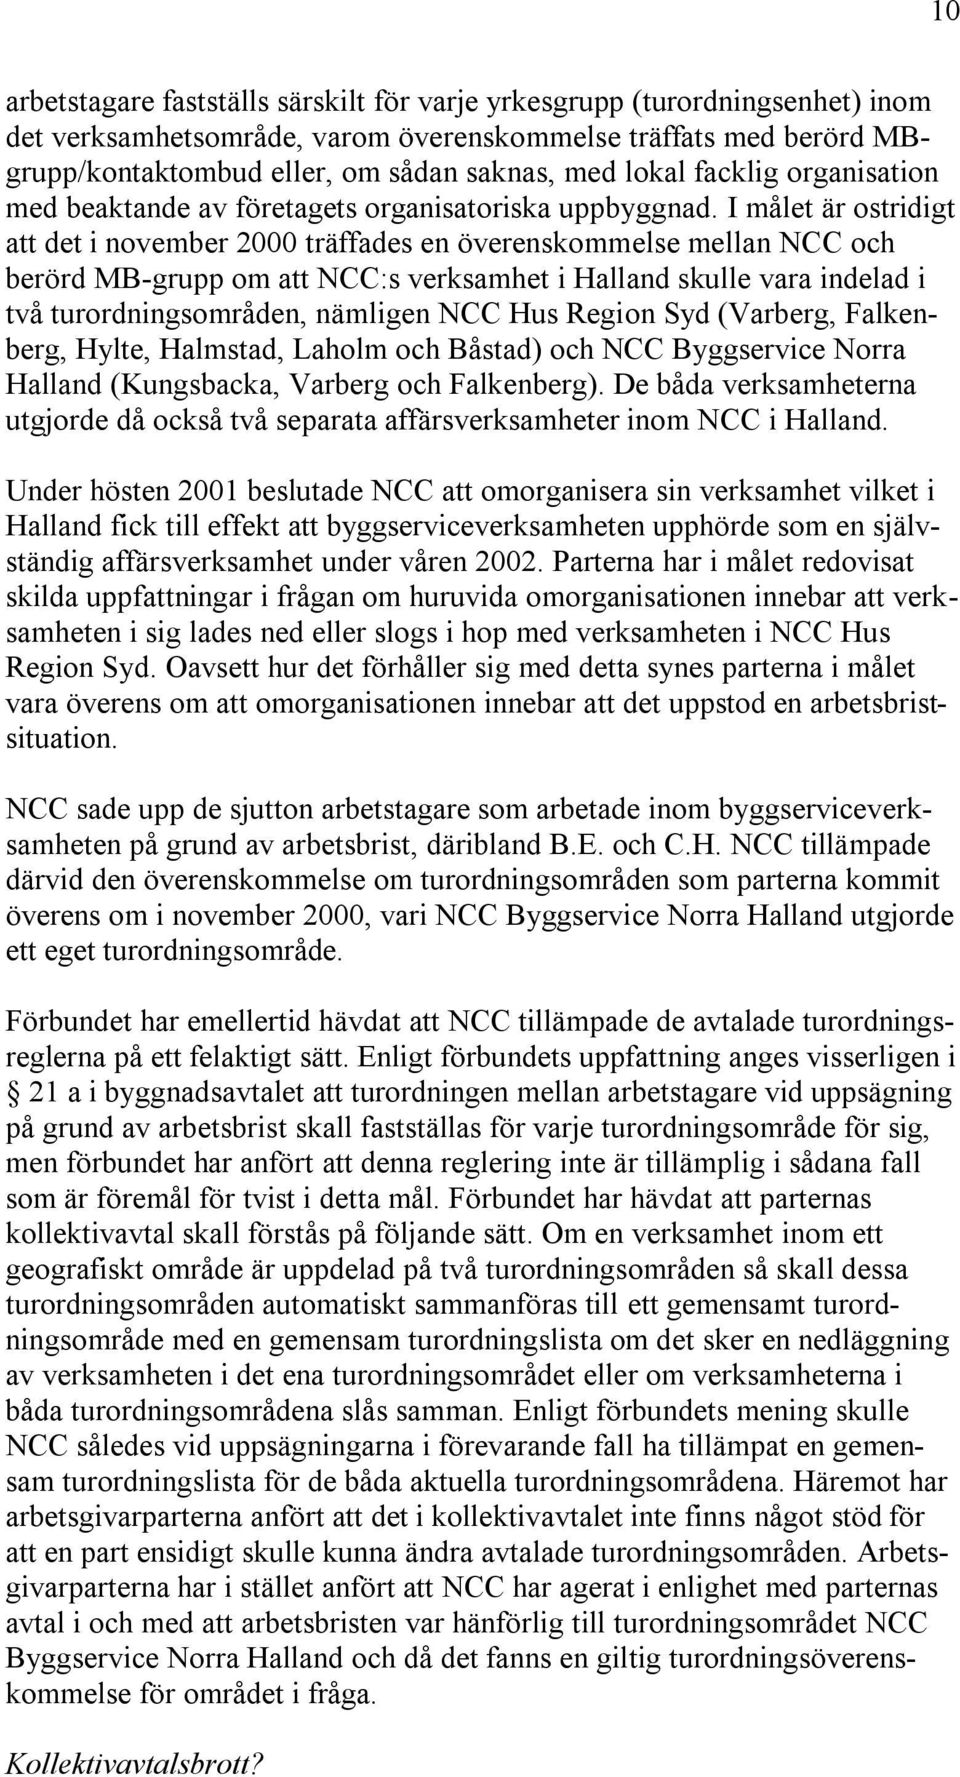 I målet är ostridigt att det i november 2000 träffades en överenskommelse mellan NCC och berörd MB-grupp om att NCC:s verksamhet i Halland skulle vara indelad i två turordningsområden, nämligen NCC